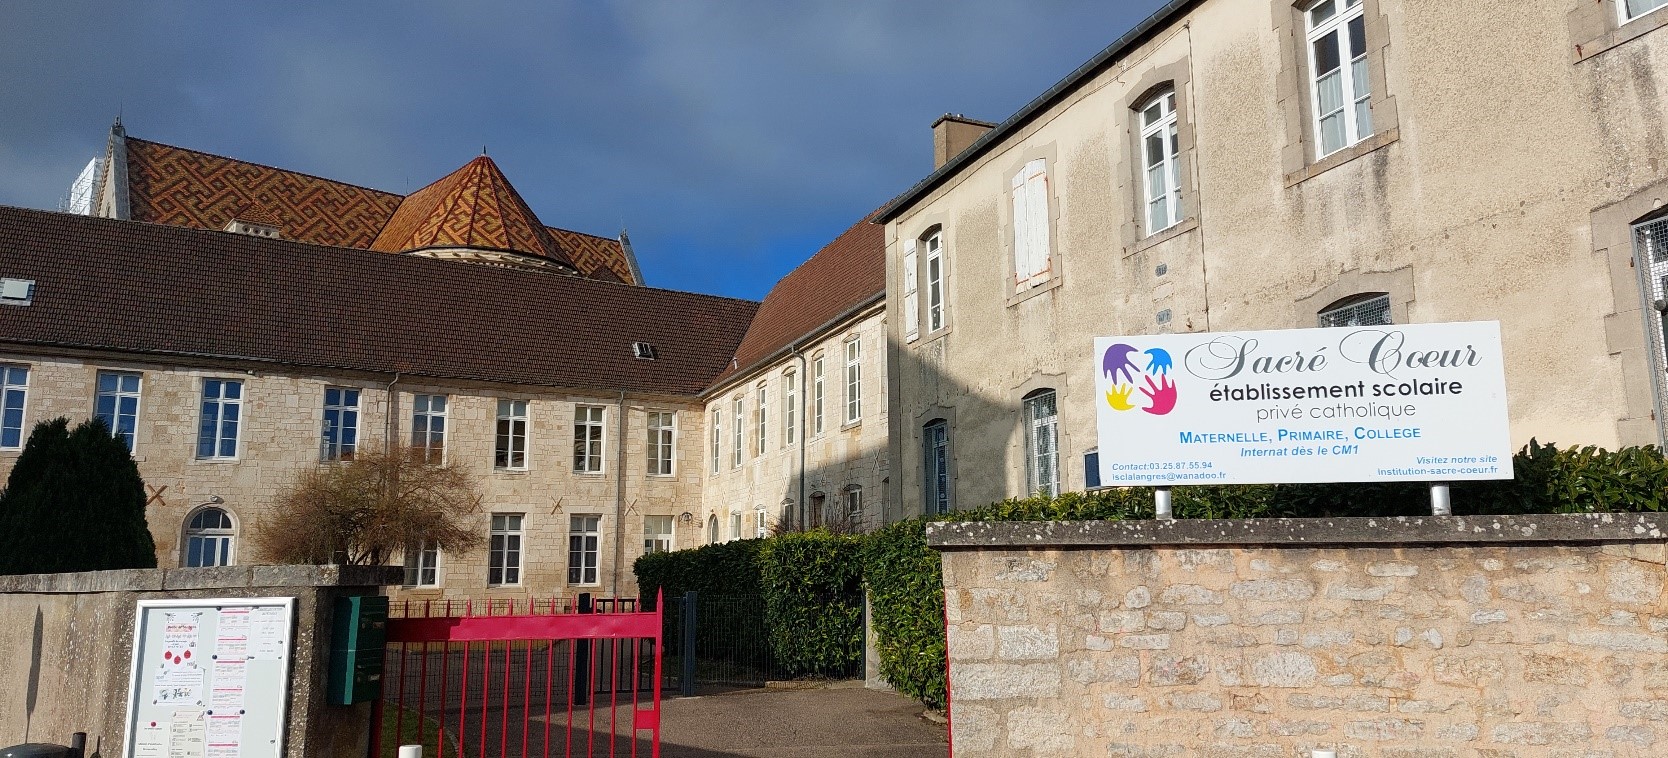 Ecole du Sacré-Cœur Jeanne Mance